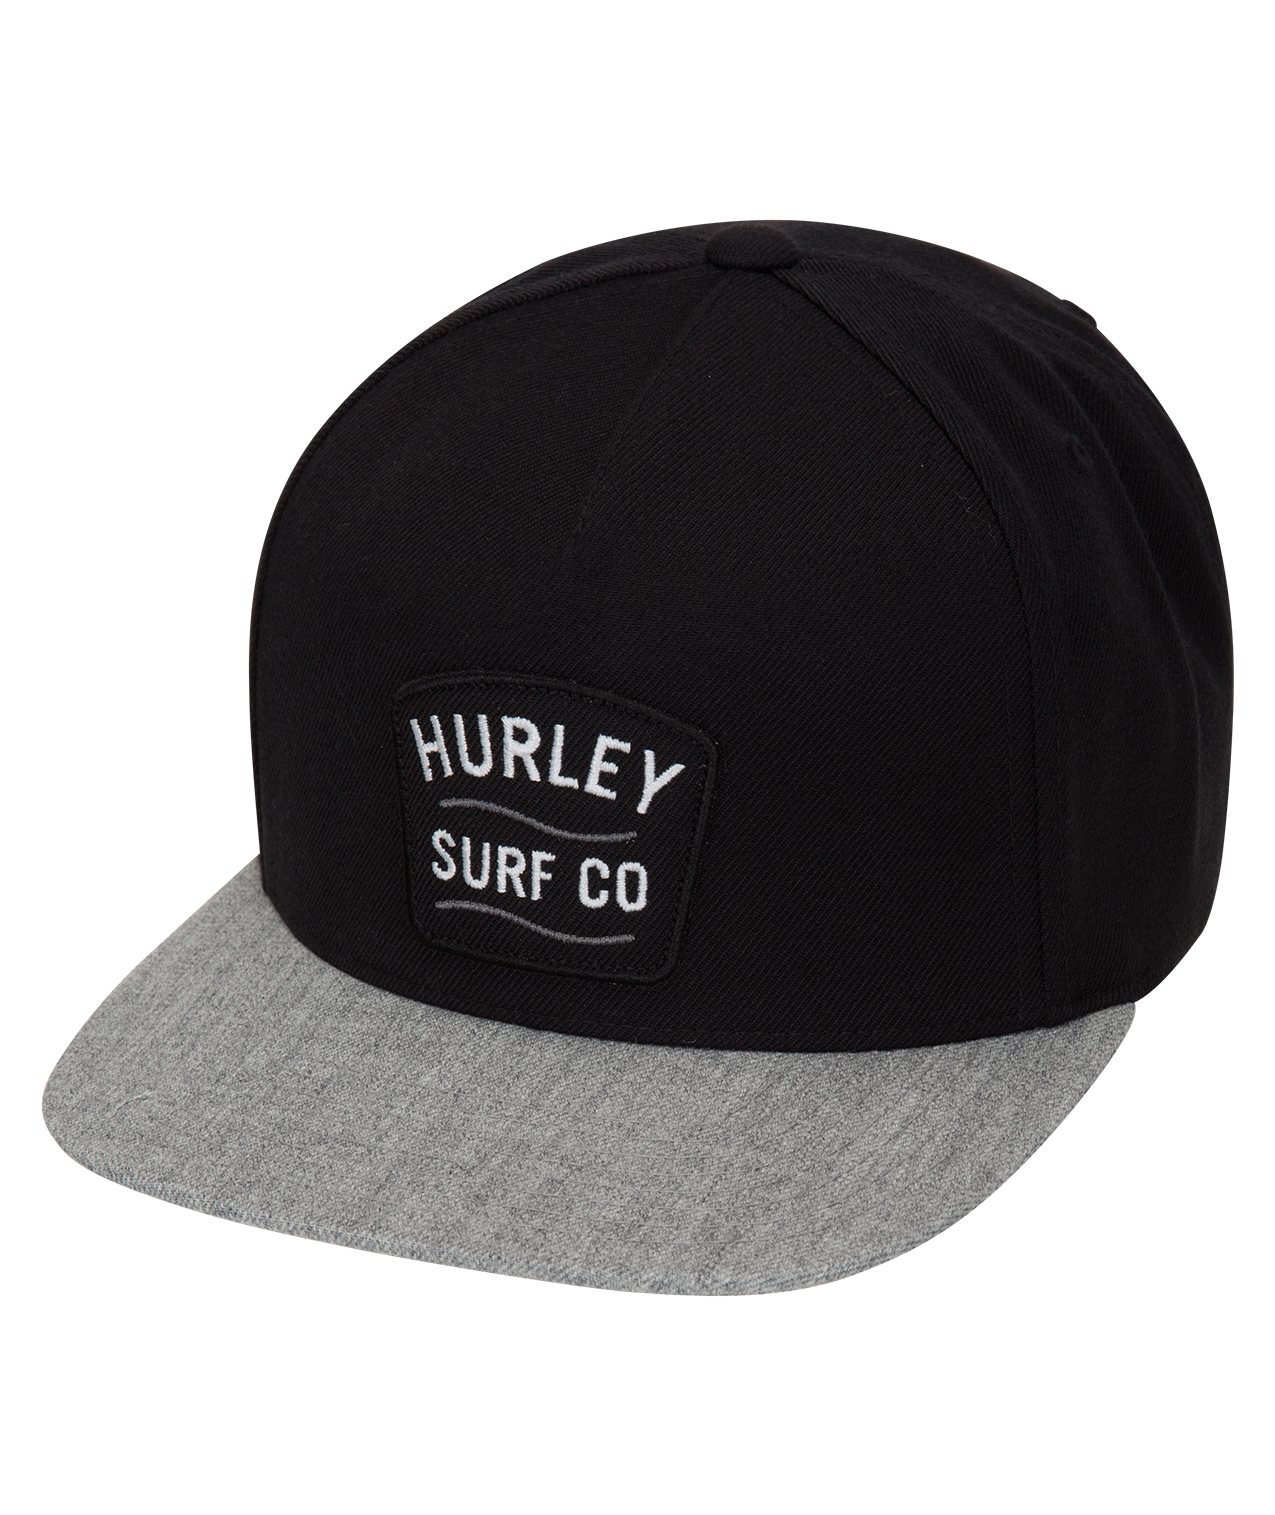 HURLEY M DERBY HAT 010 AV4725